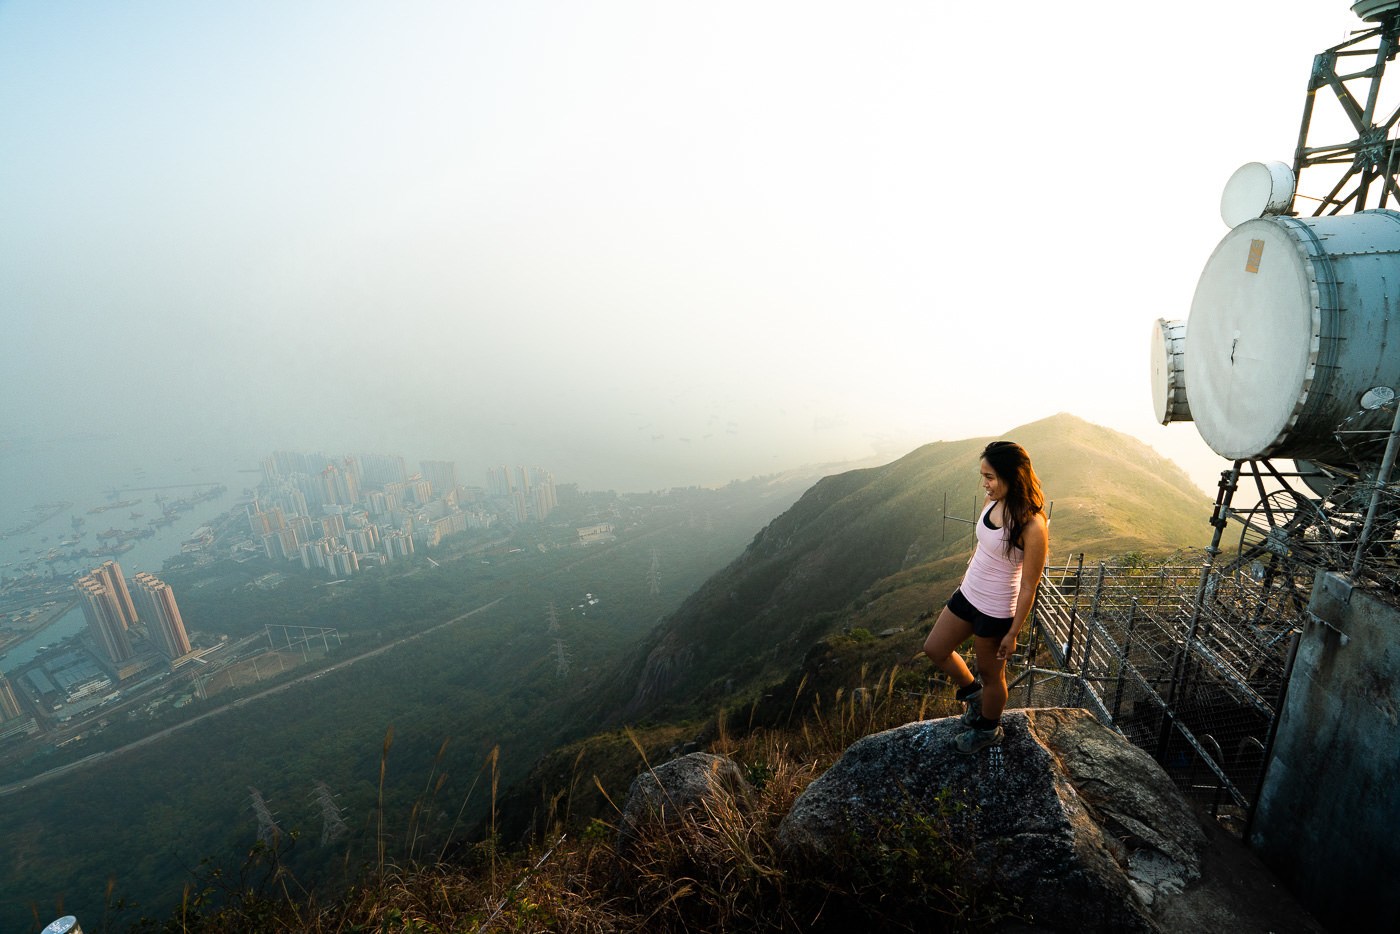 Castle Peak Hike In Hong Kong: The Hiker’s Guide